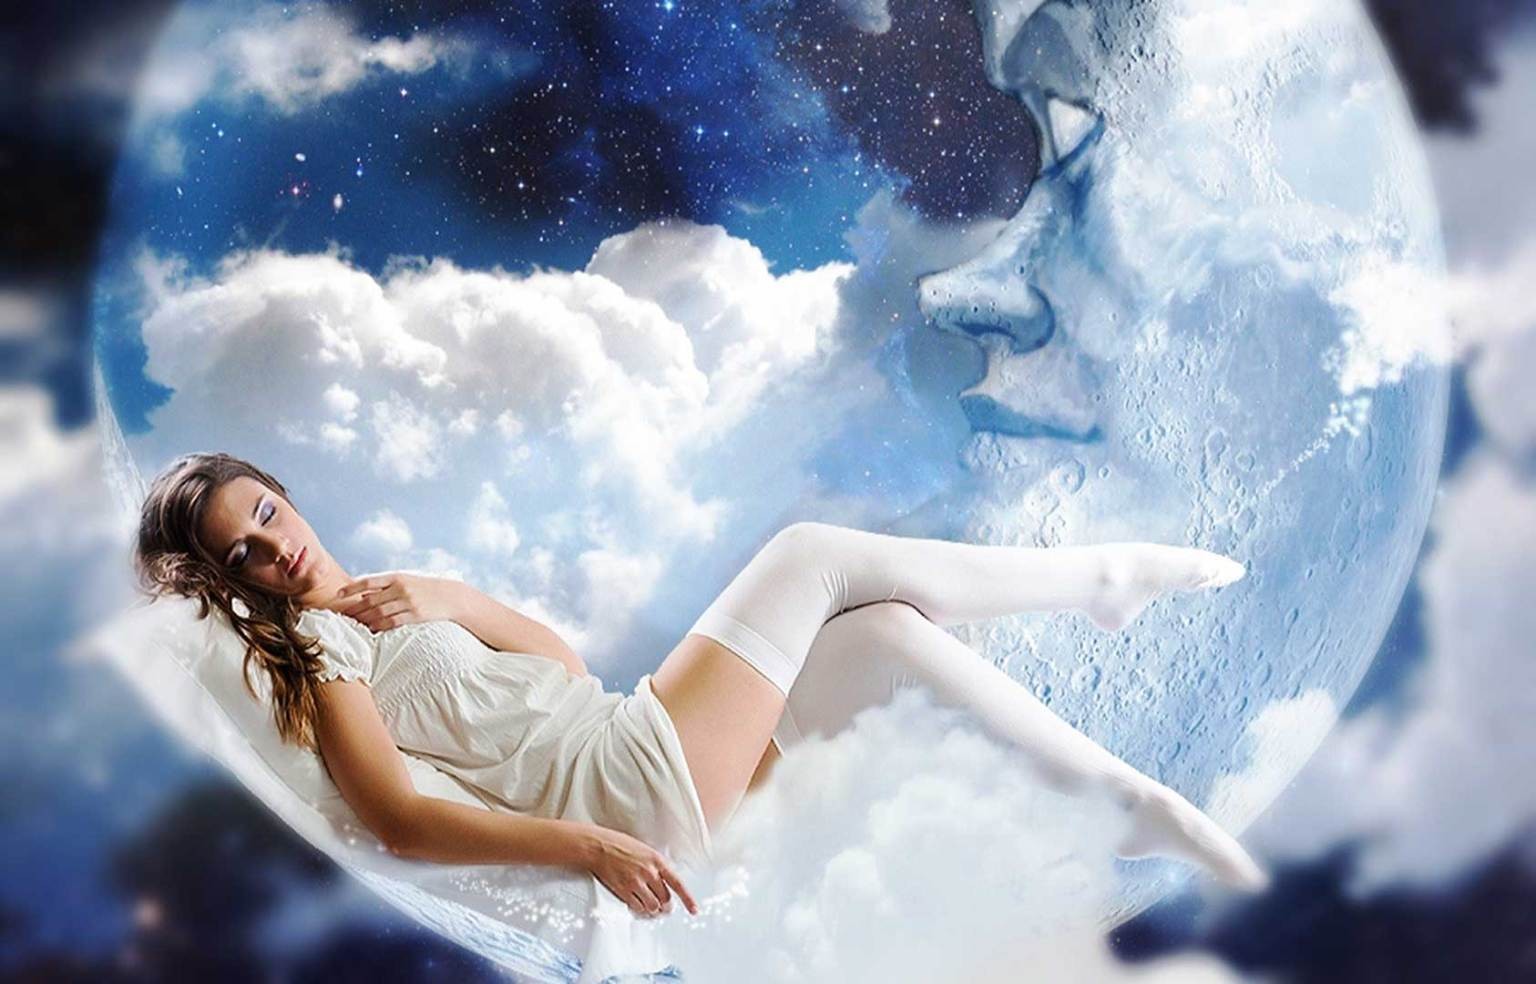 Слушать мне приснился сон в сказочном краю. Сновидения. Девушка в облаках. Девушка летает в облаках. Сны и сновидения.